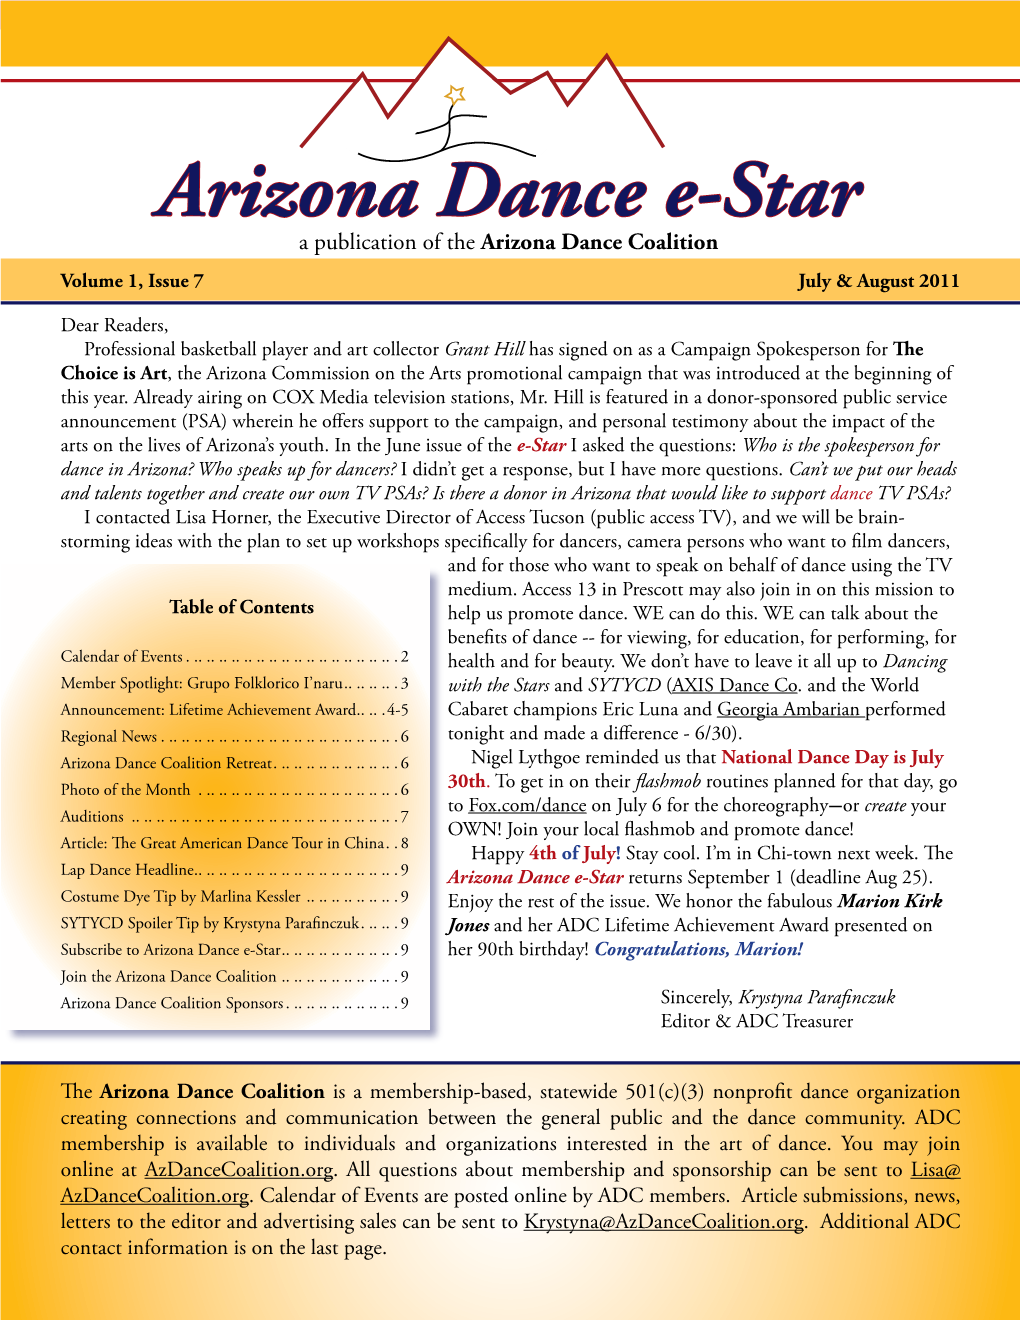 Arizona Dance E-Star